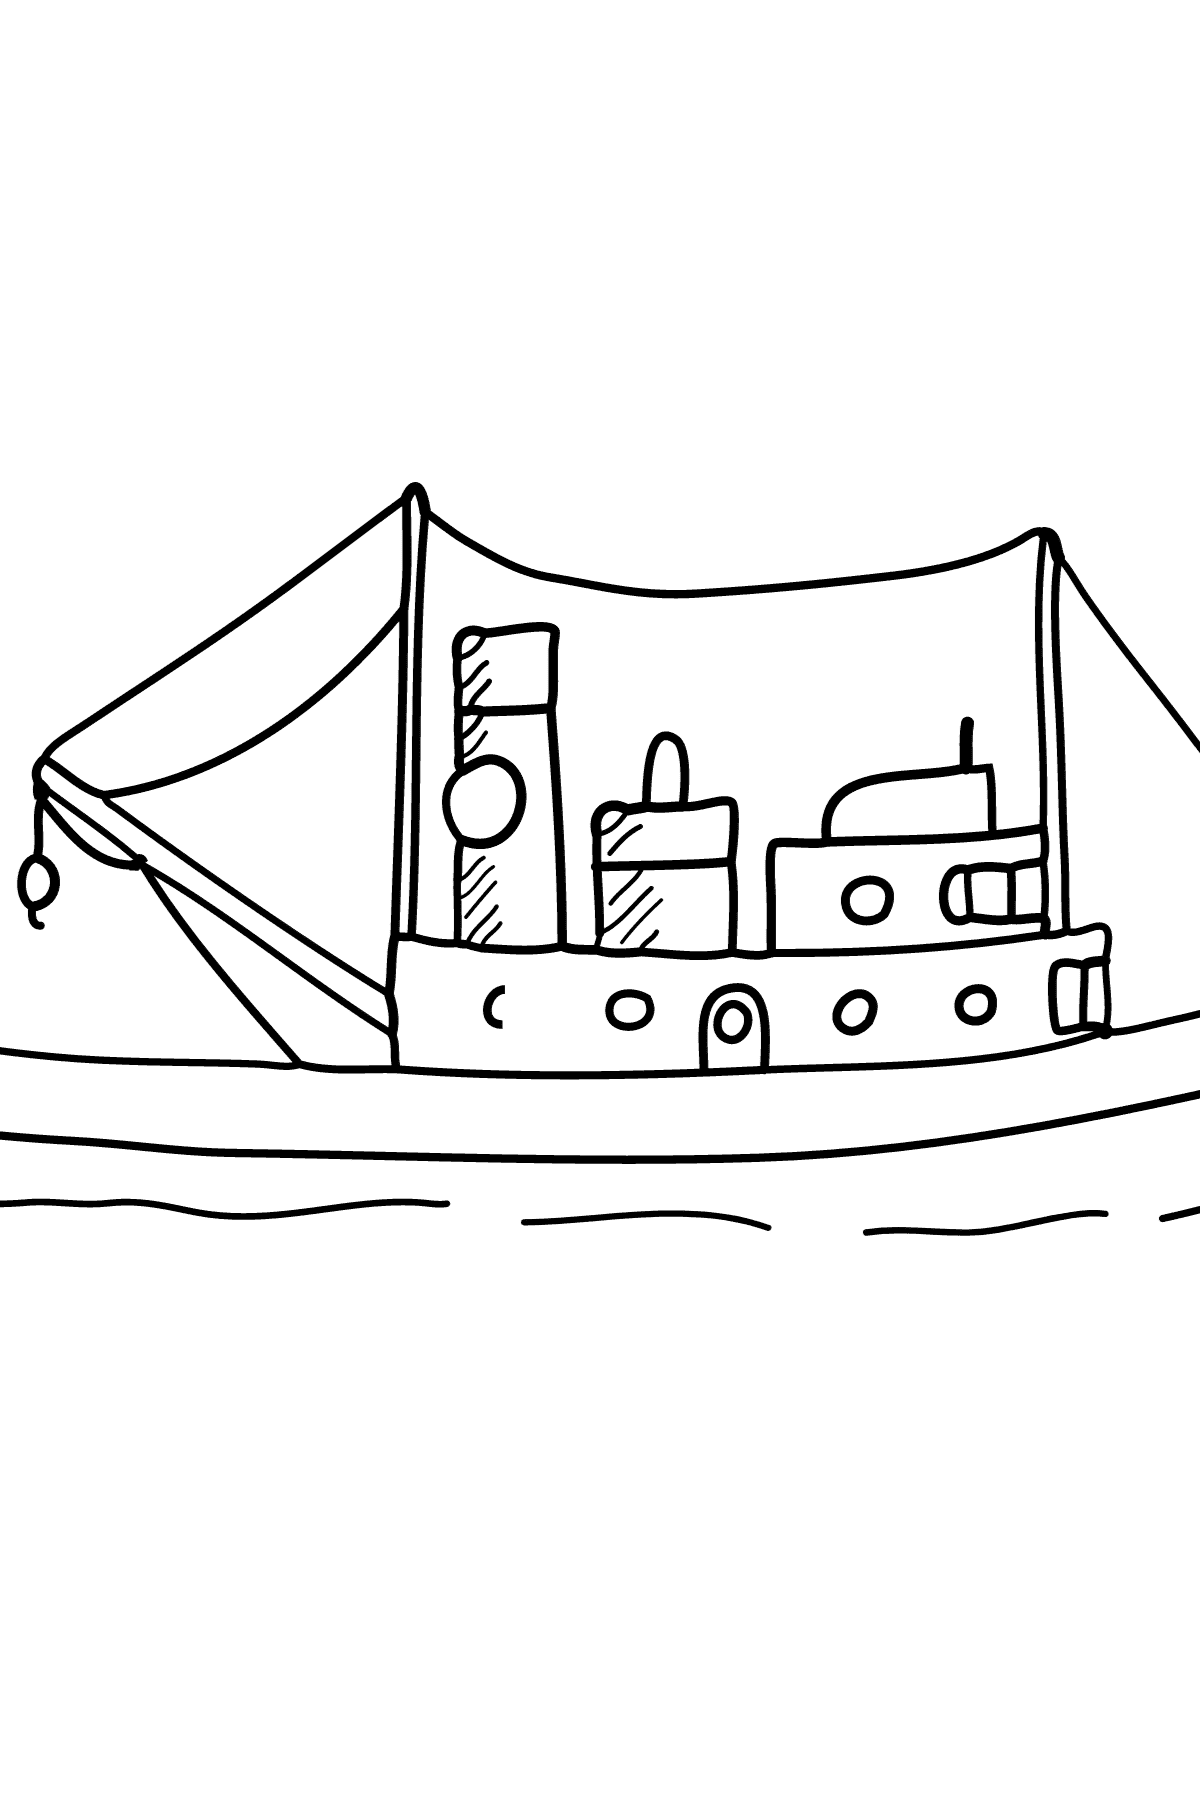 Desenho de navio de carga para colorir - Imagens para Colorir para Crianças